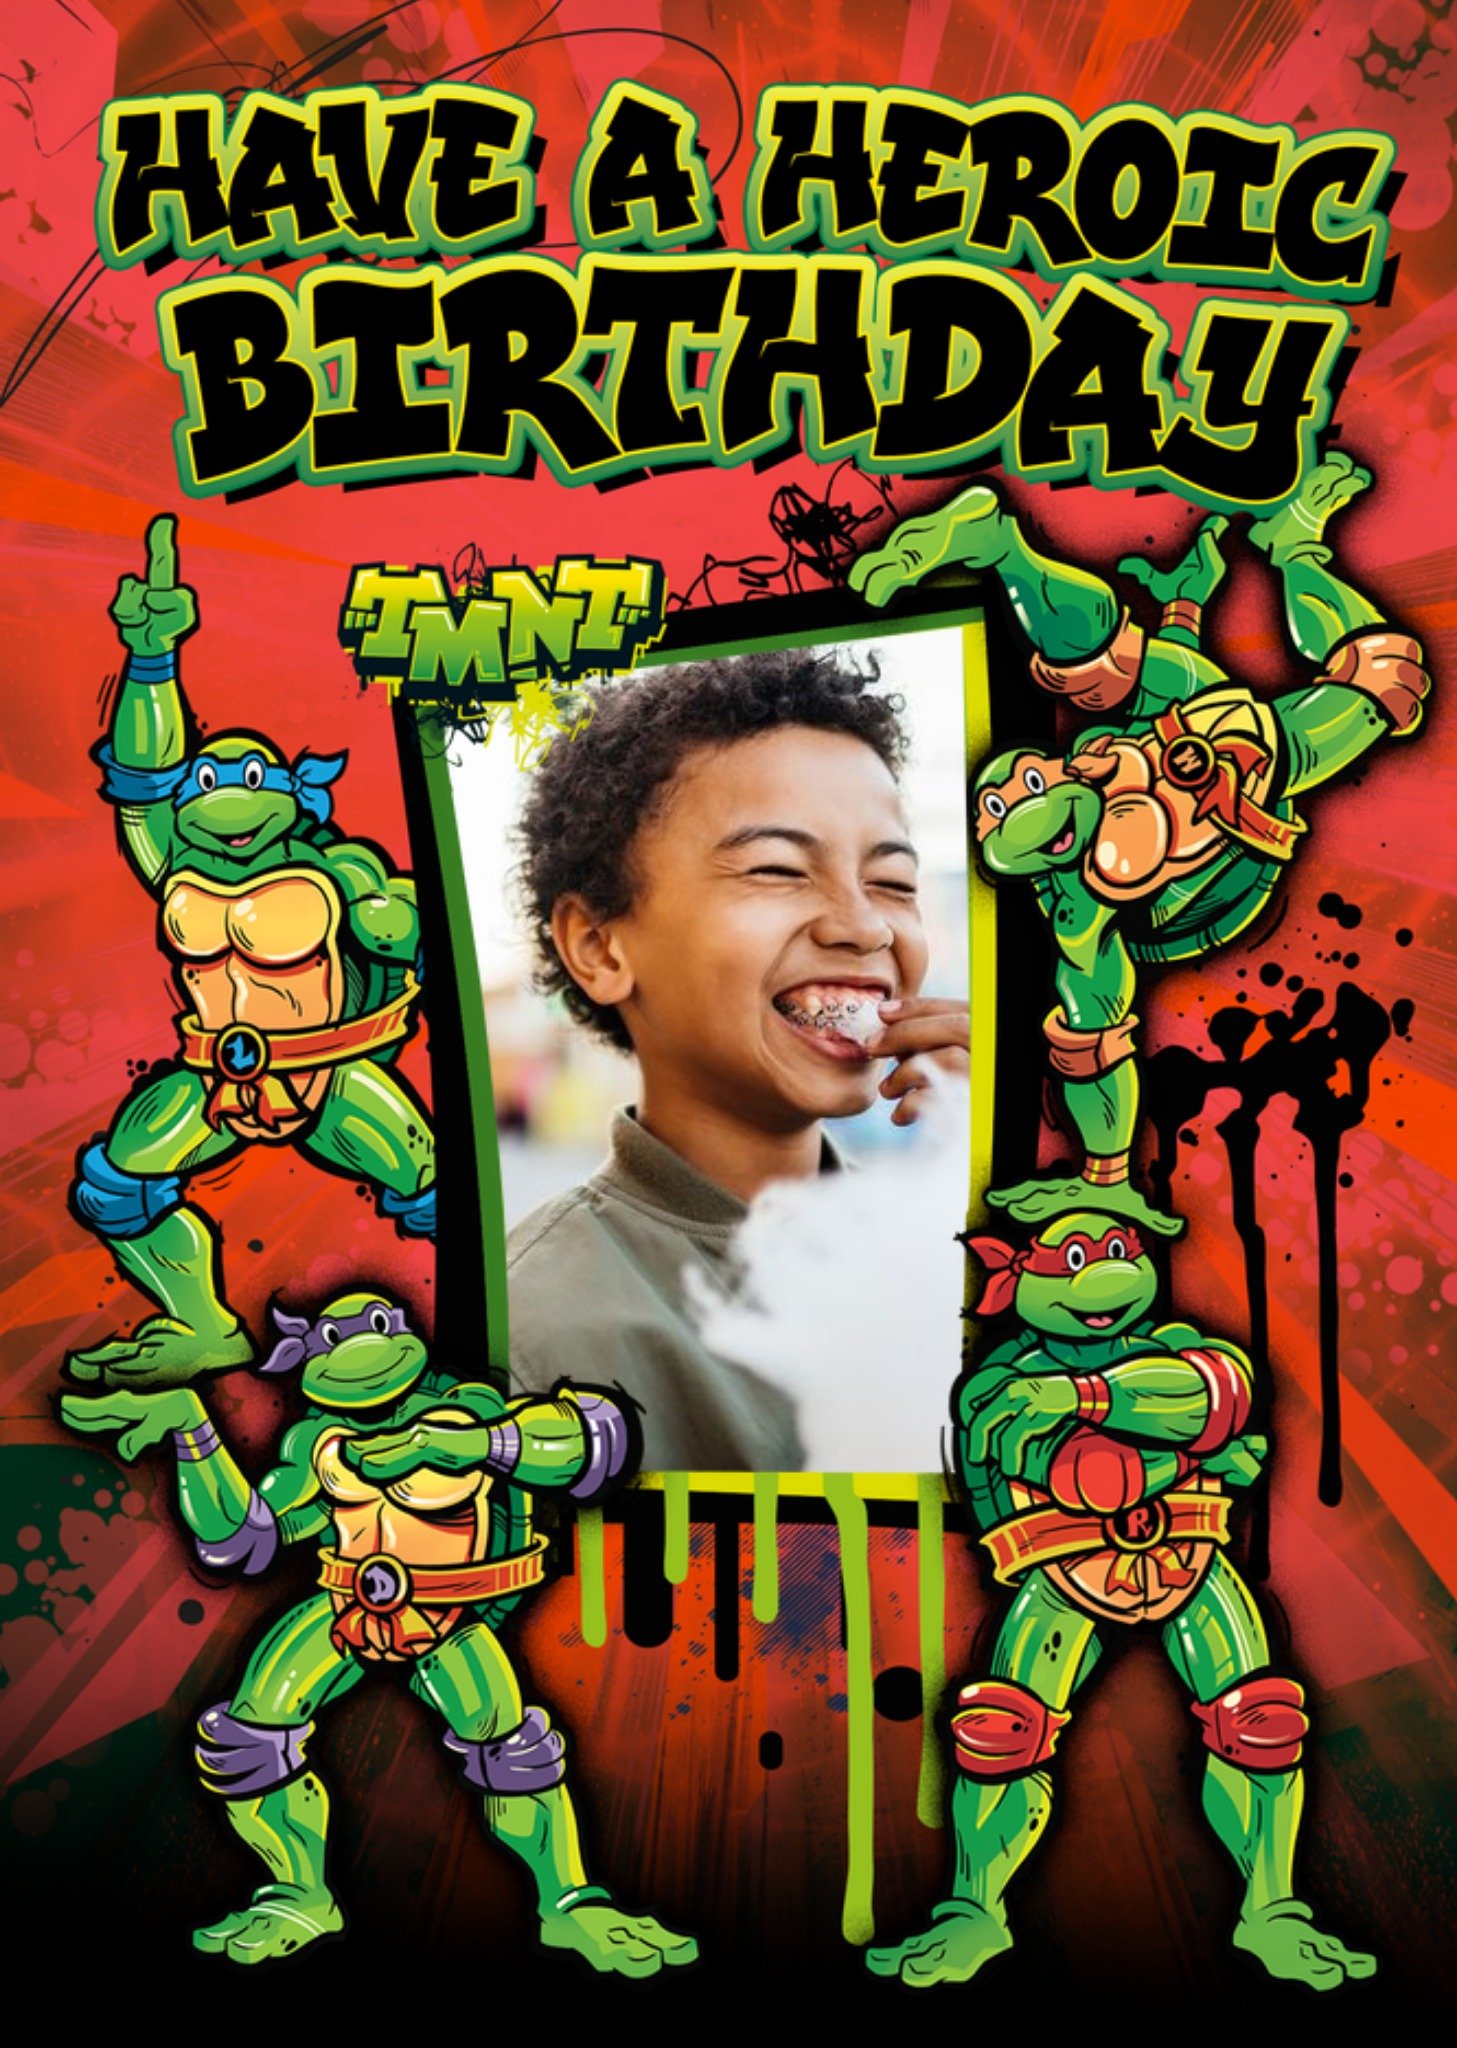 Moonpig Teenage Mutant Ninja Turtles Cartoon Heroic Photo Upload Birthday Card, Large